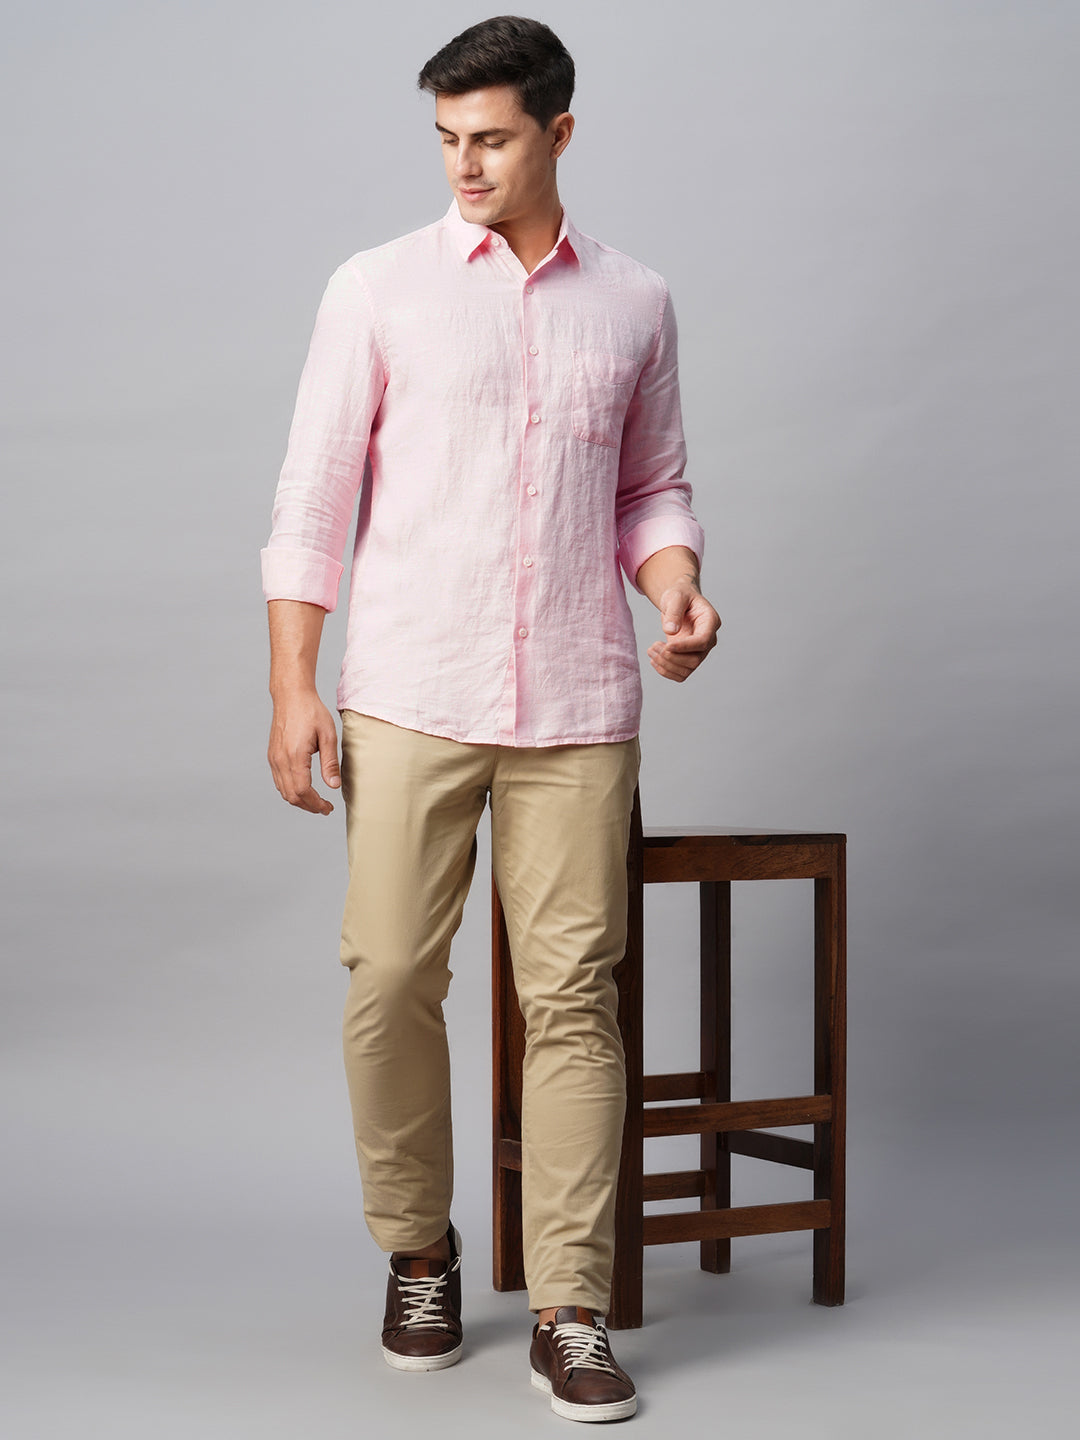 Men's 100% Linen Pink Regular Fit Long Sleeved Shirt